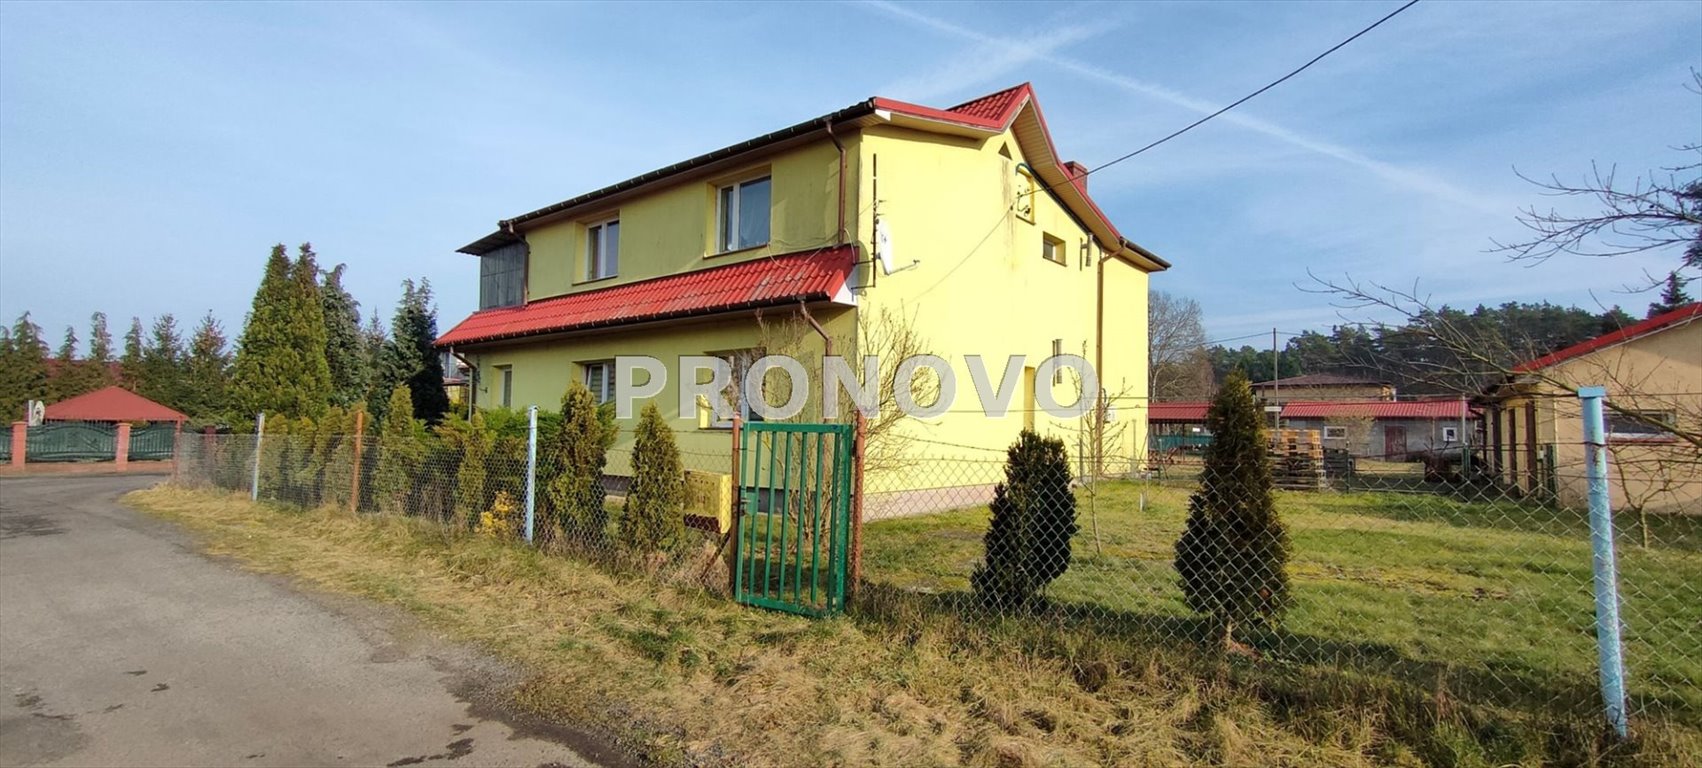 Dom na sprzedaż Szczecin, Wielgowo  190m2 Foto 1